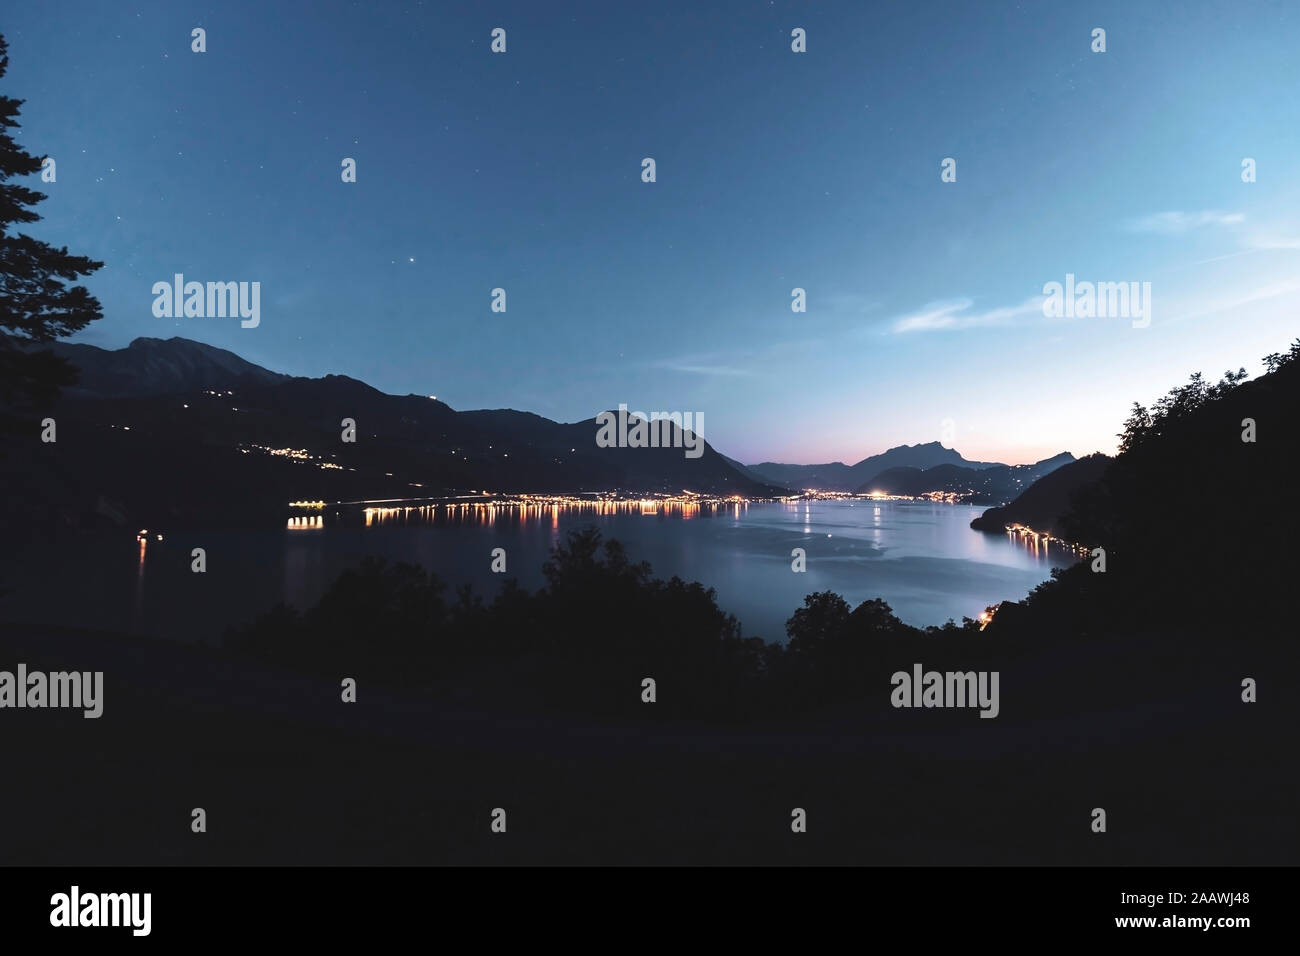 La Suisse, Lucerne, Schwyz, allumé le long de côte du lac des Quatre-Cantons au crépuscule Banque D'Images